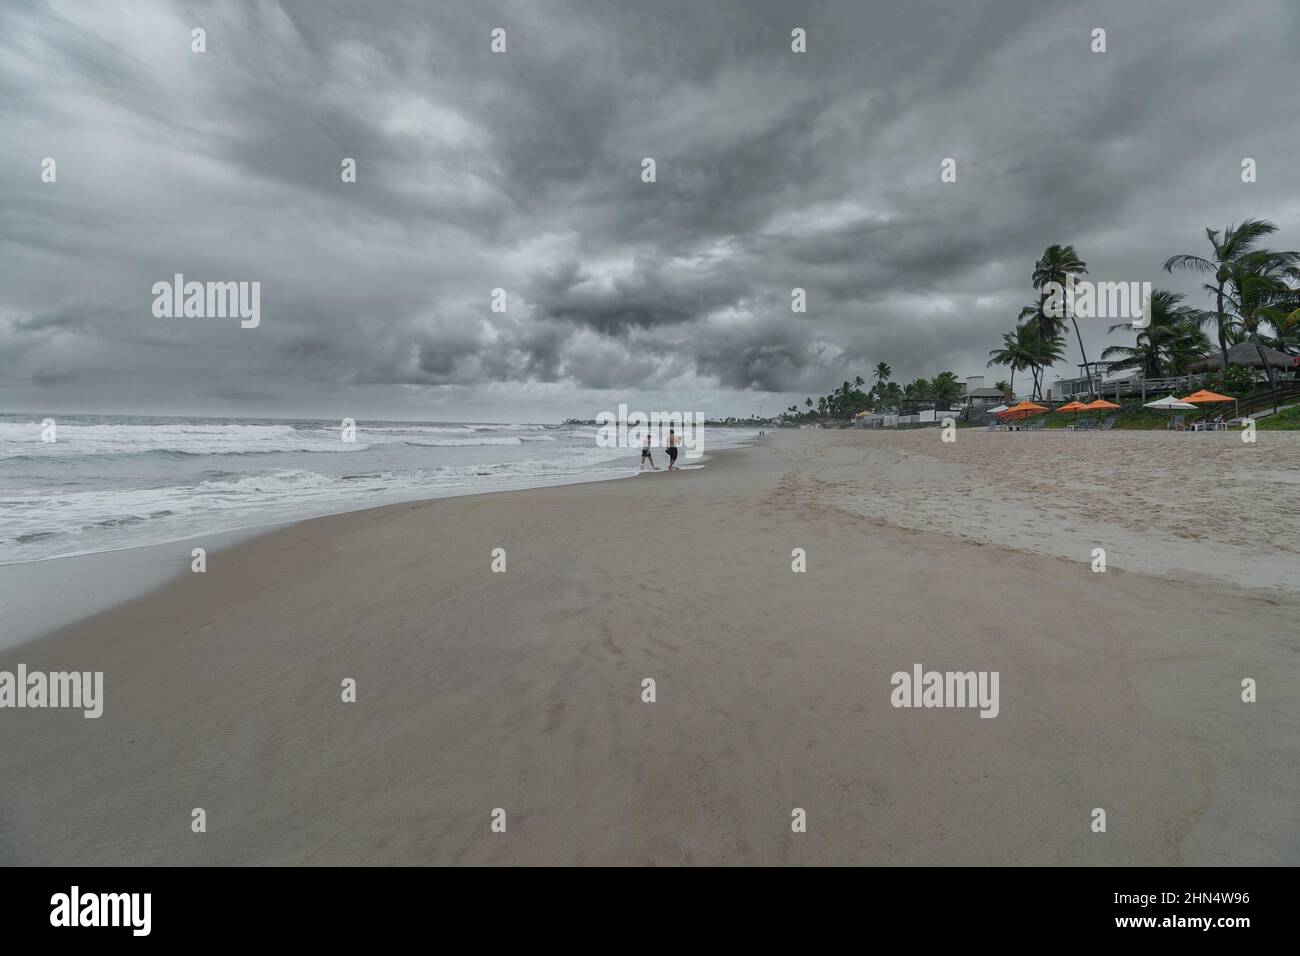 Journée sur la plage avec prévisions de pluie, nuages lourds et mauvais temps. Photo à la plage de Porto de Galinhas. Banque D'Images